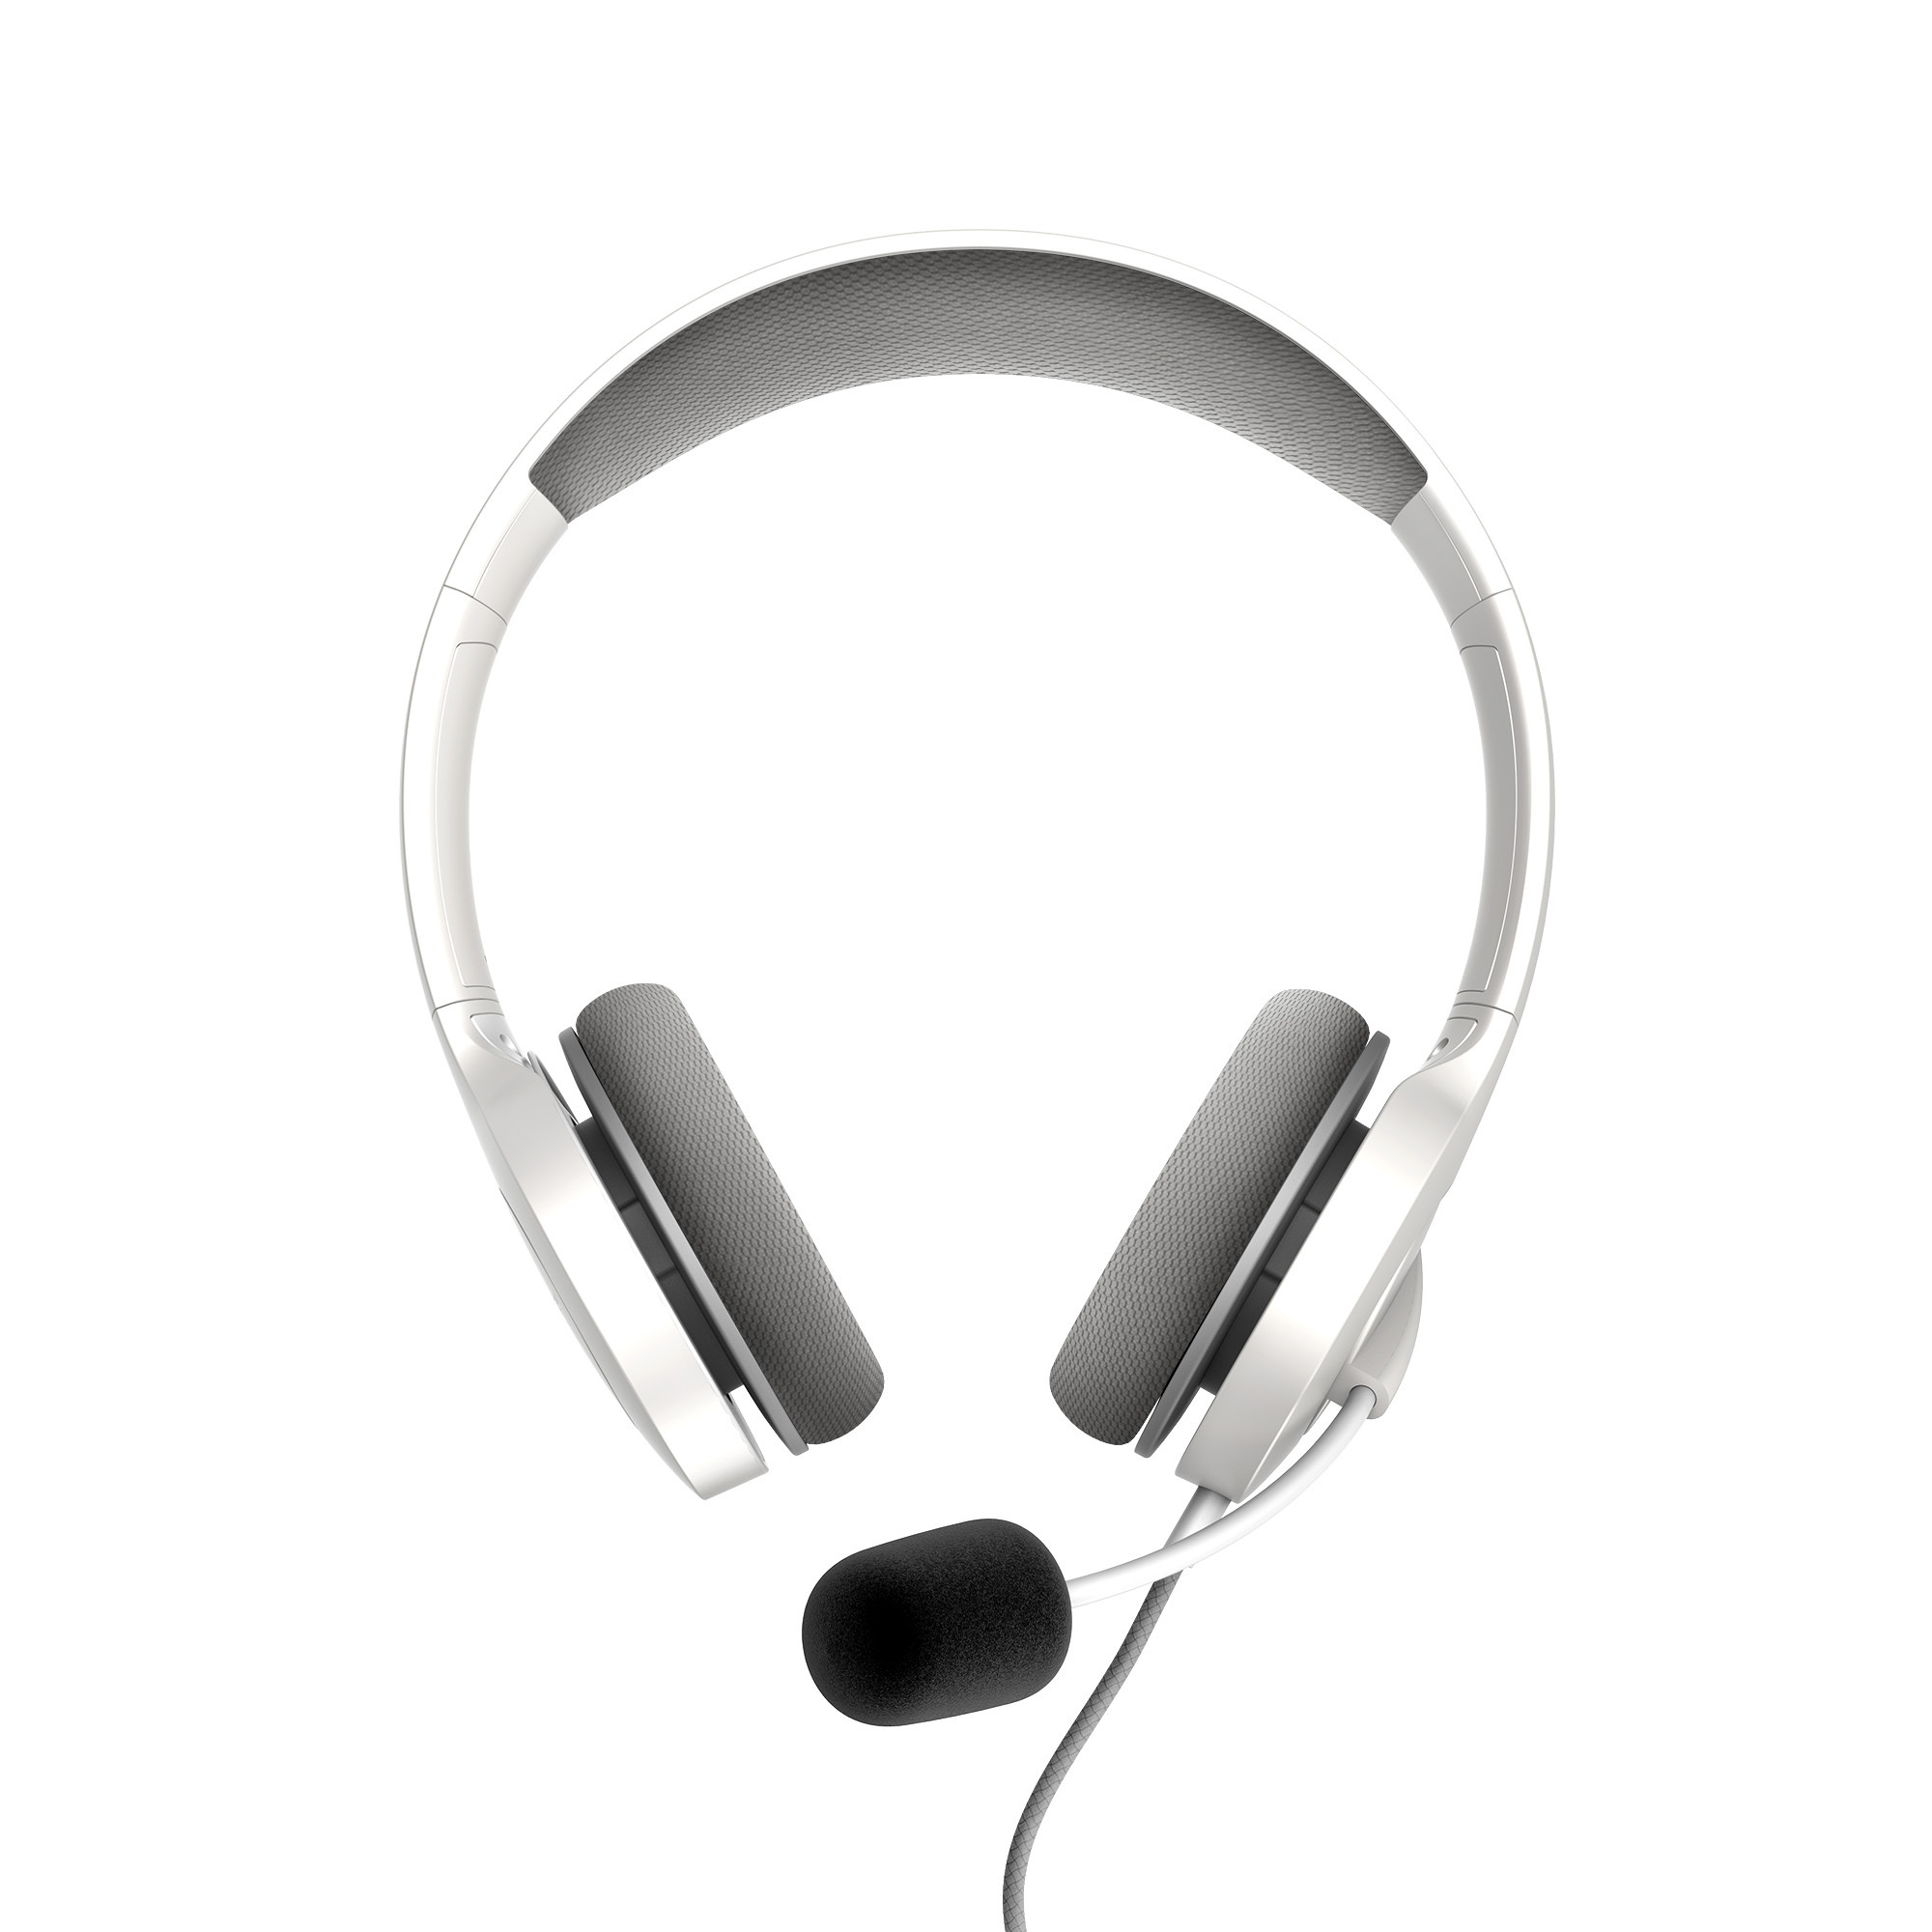 Comprar auriculares con micrófono para oficinas y empresas